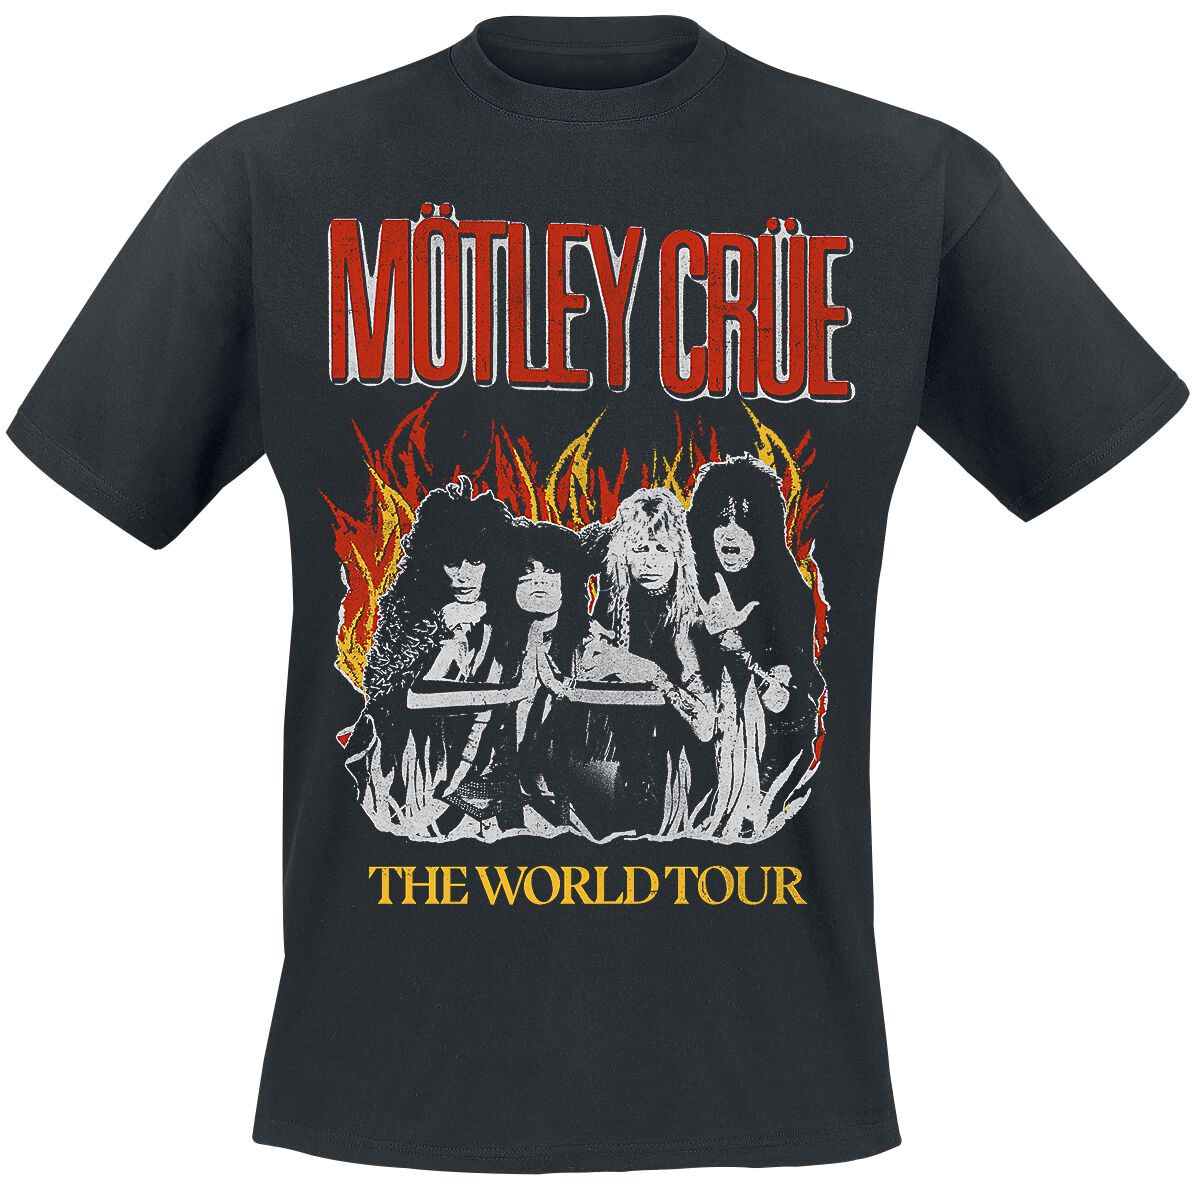 Mötley Crüe T-Shirt - Vintage World Tour Flames - M bis 4XL - für Männer - Größe 3XL - schwarz  - Lizenziertes Merchandise!